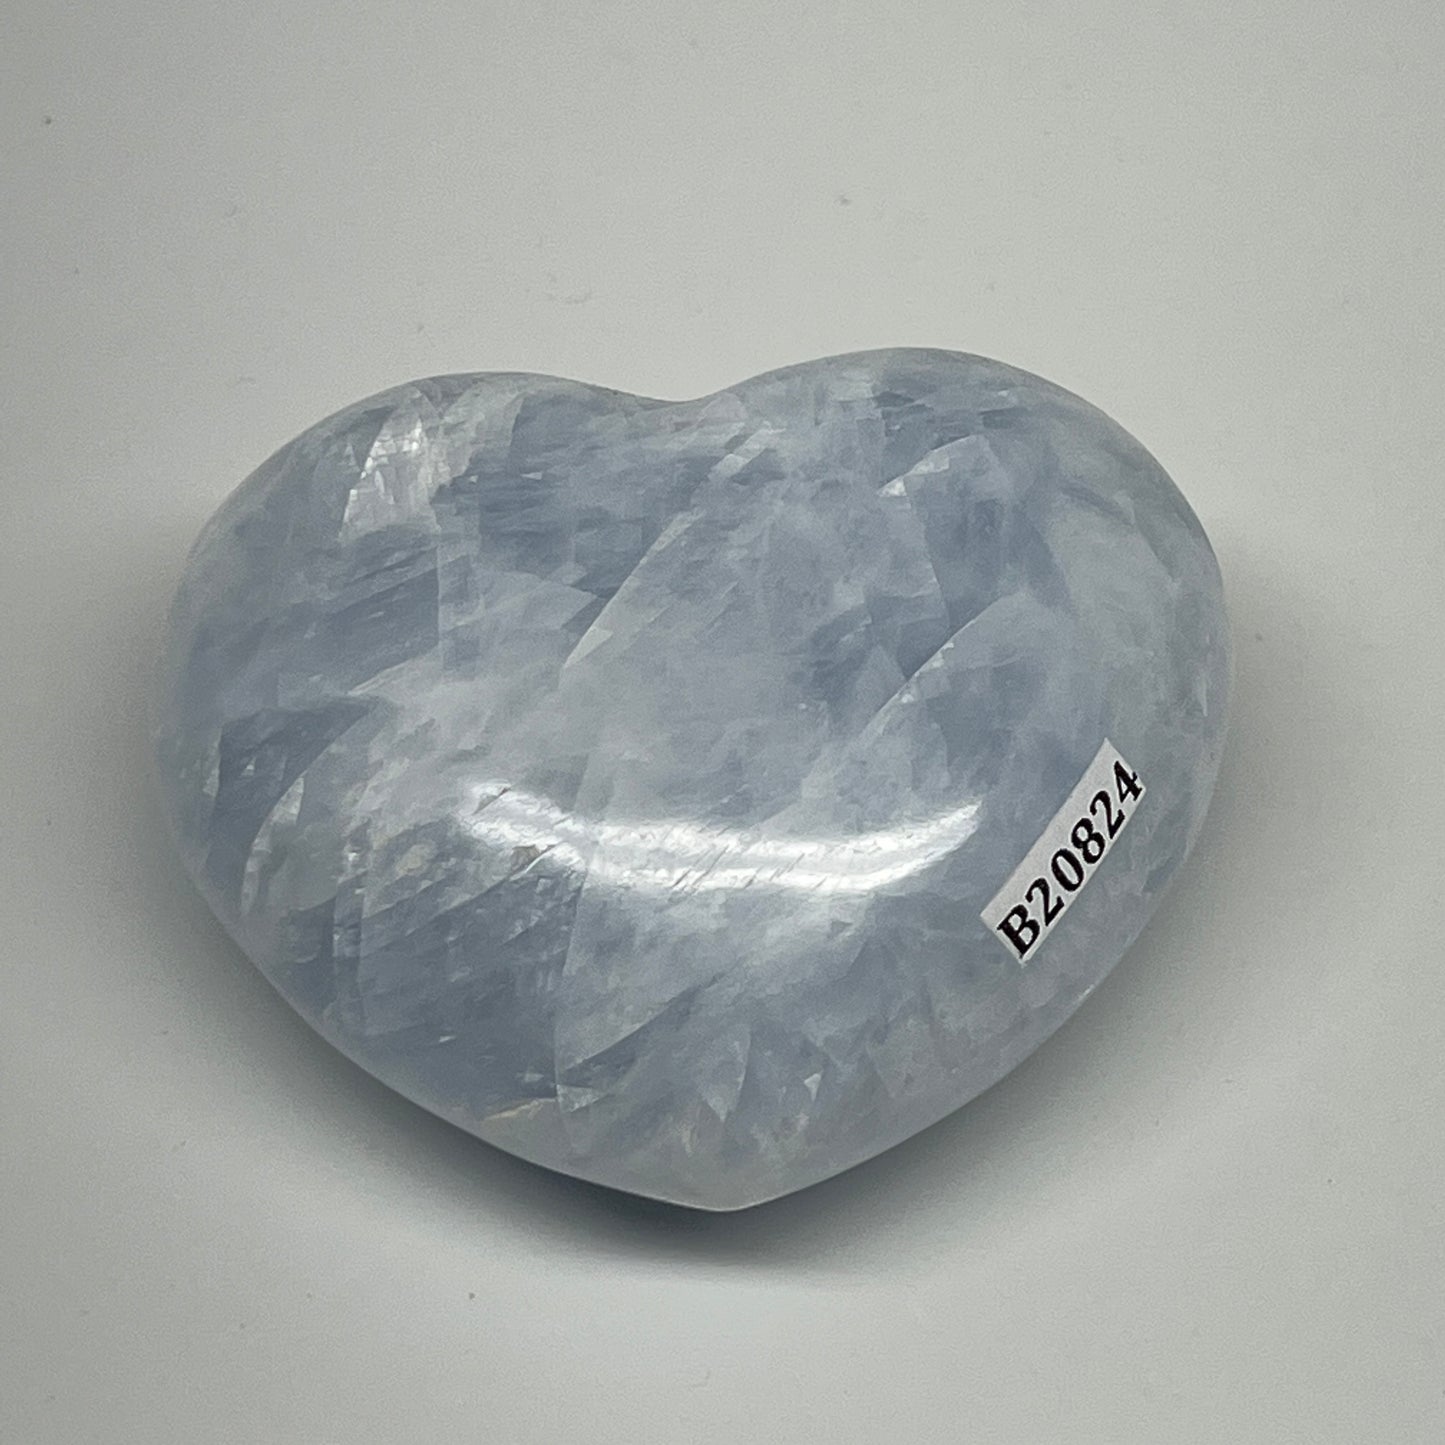 181.4g, 2.3"x2.7"x1.3" Blue Calcite Heart Gemstones Reiki @Madagascar,B20824